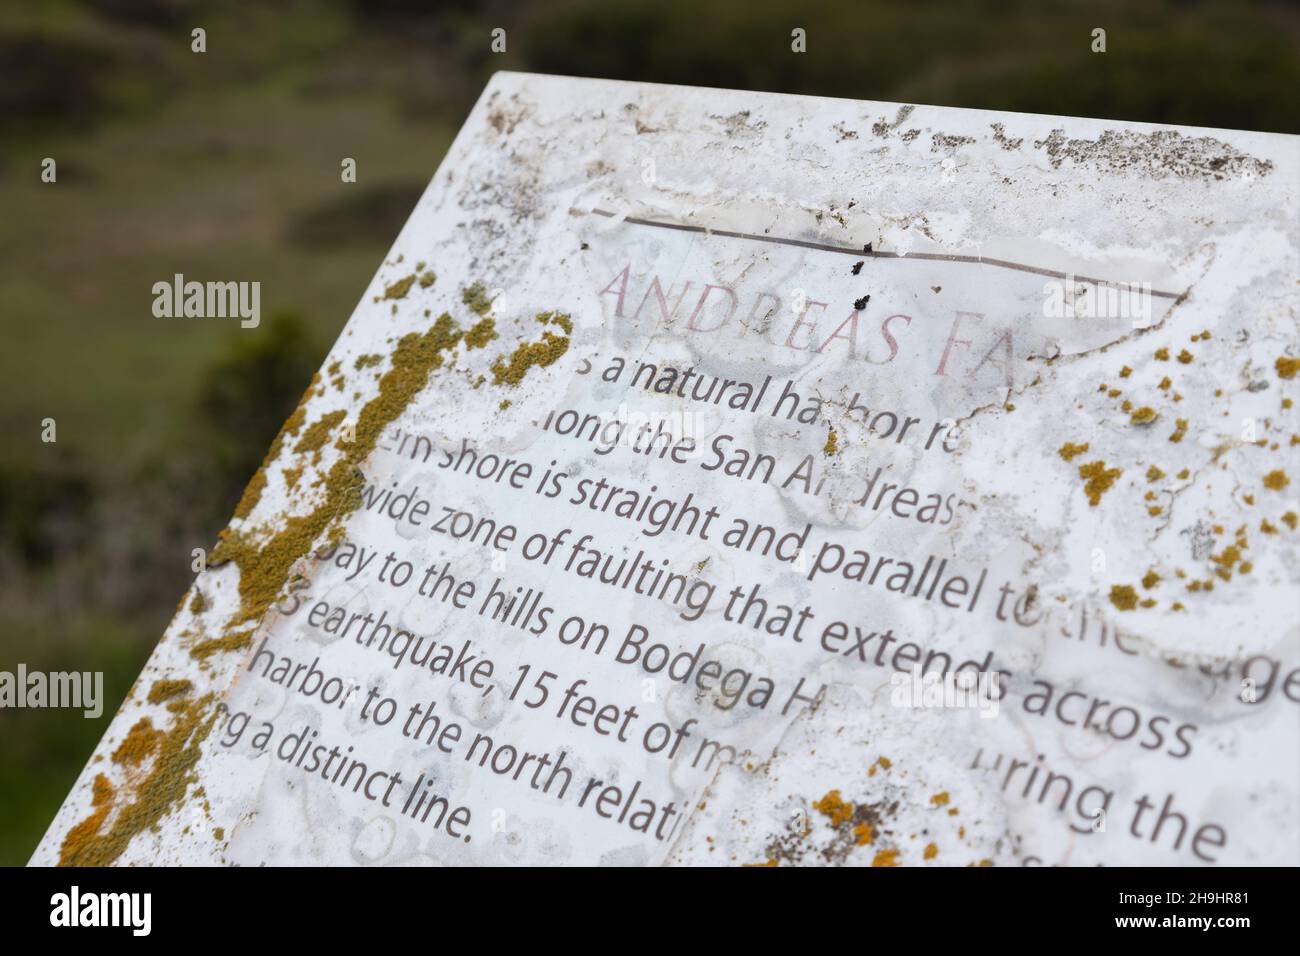 Un segno sulla colpa di San Andreas che si sta staccando e coperto di lichen, a Bodega Head in California. Foto Stock